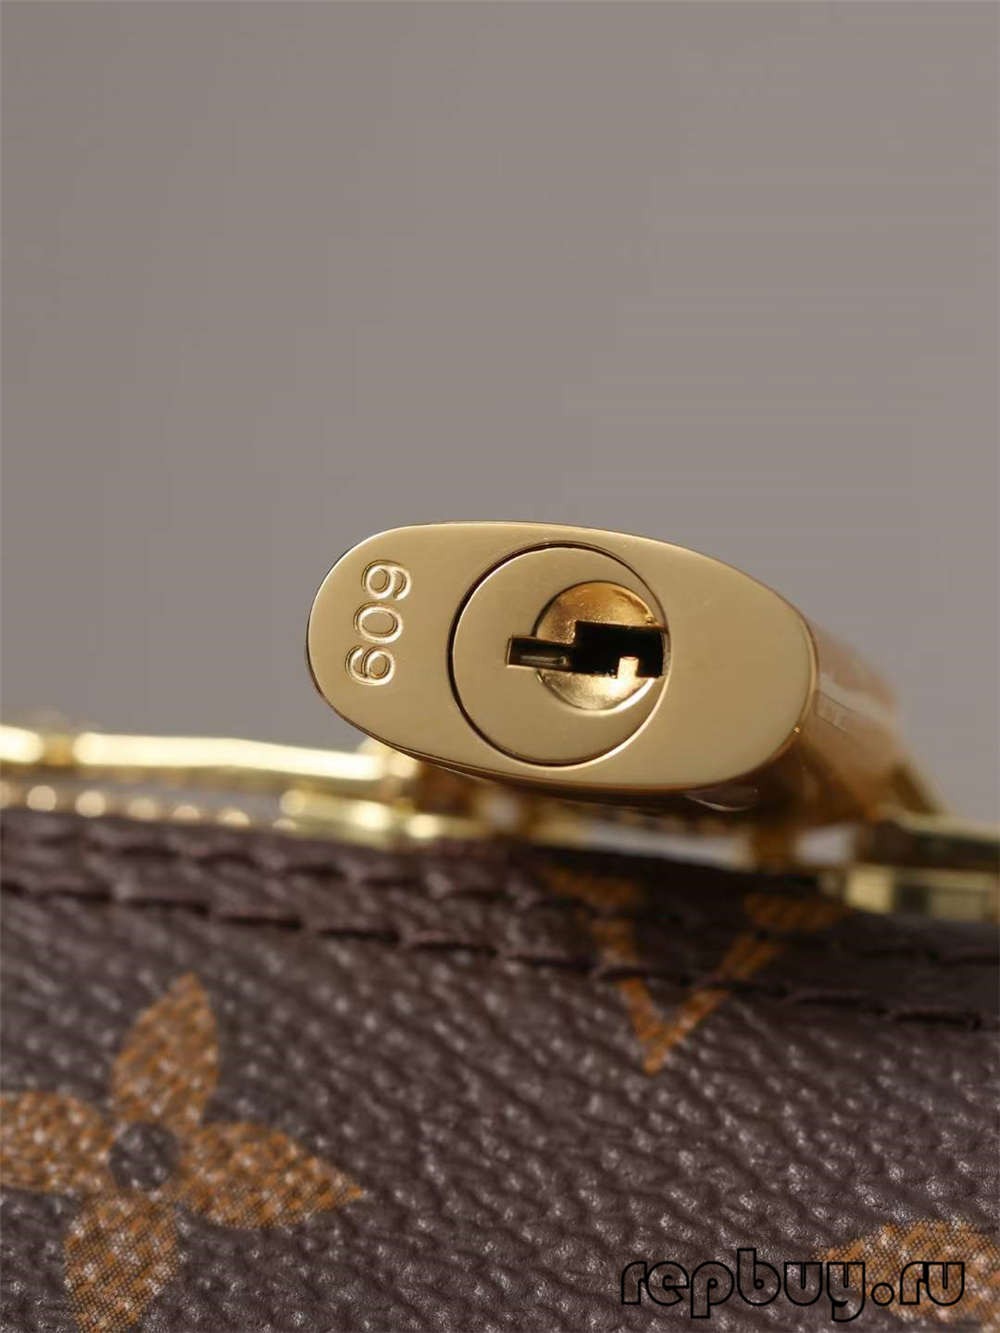 Louis Vuitton M53152 Alma BB top quality replica bags (2022 Updated)-Best Quality Fake Louis Vuitton Bag Online Store, Replica designer bag ru